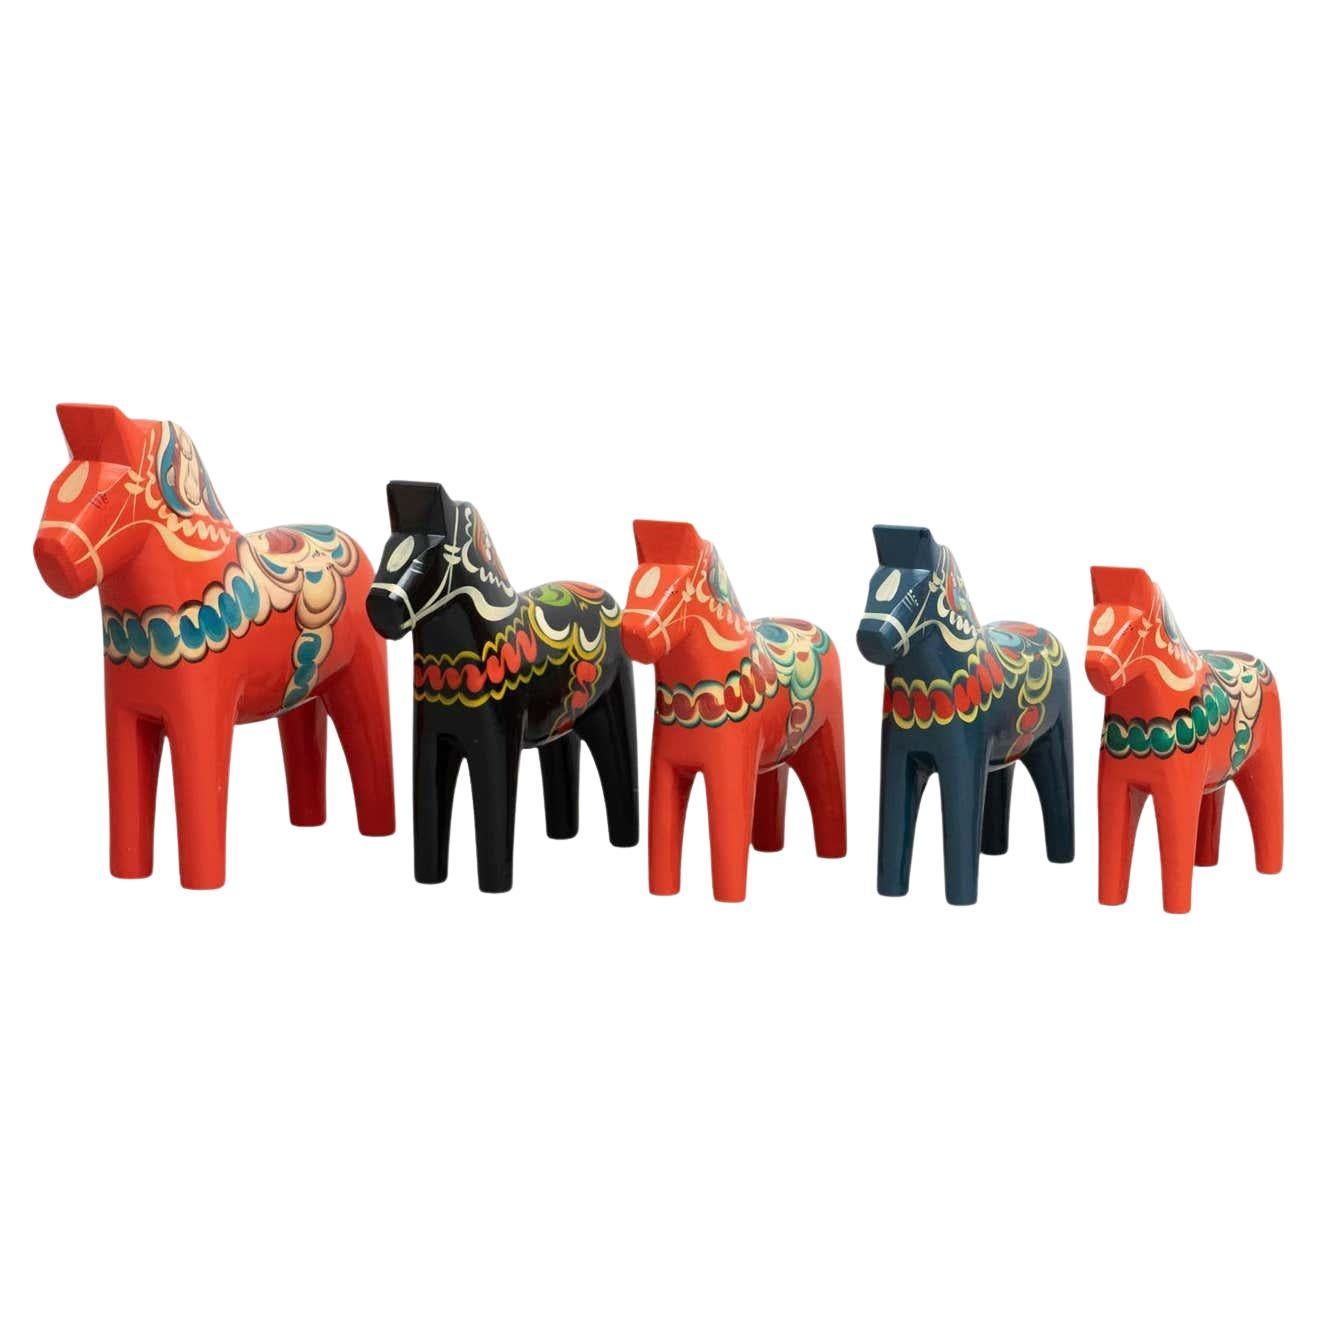 Ensemble de 5 jouets de cheval Dala en bois folklorique suédois, vers 1960